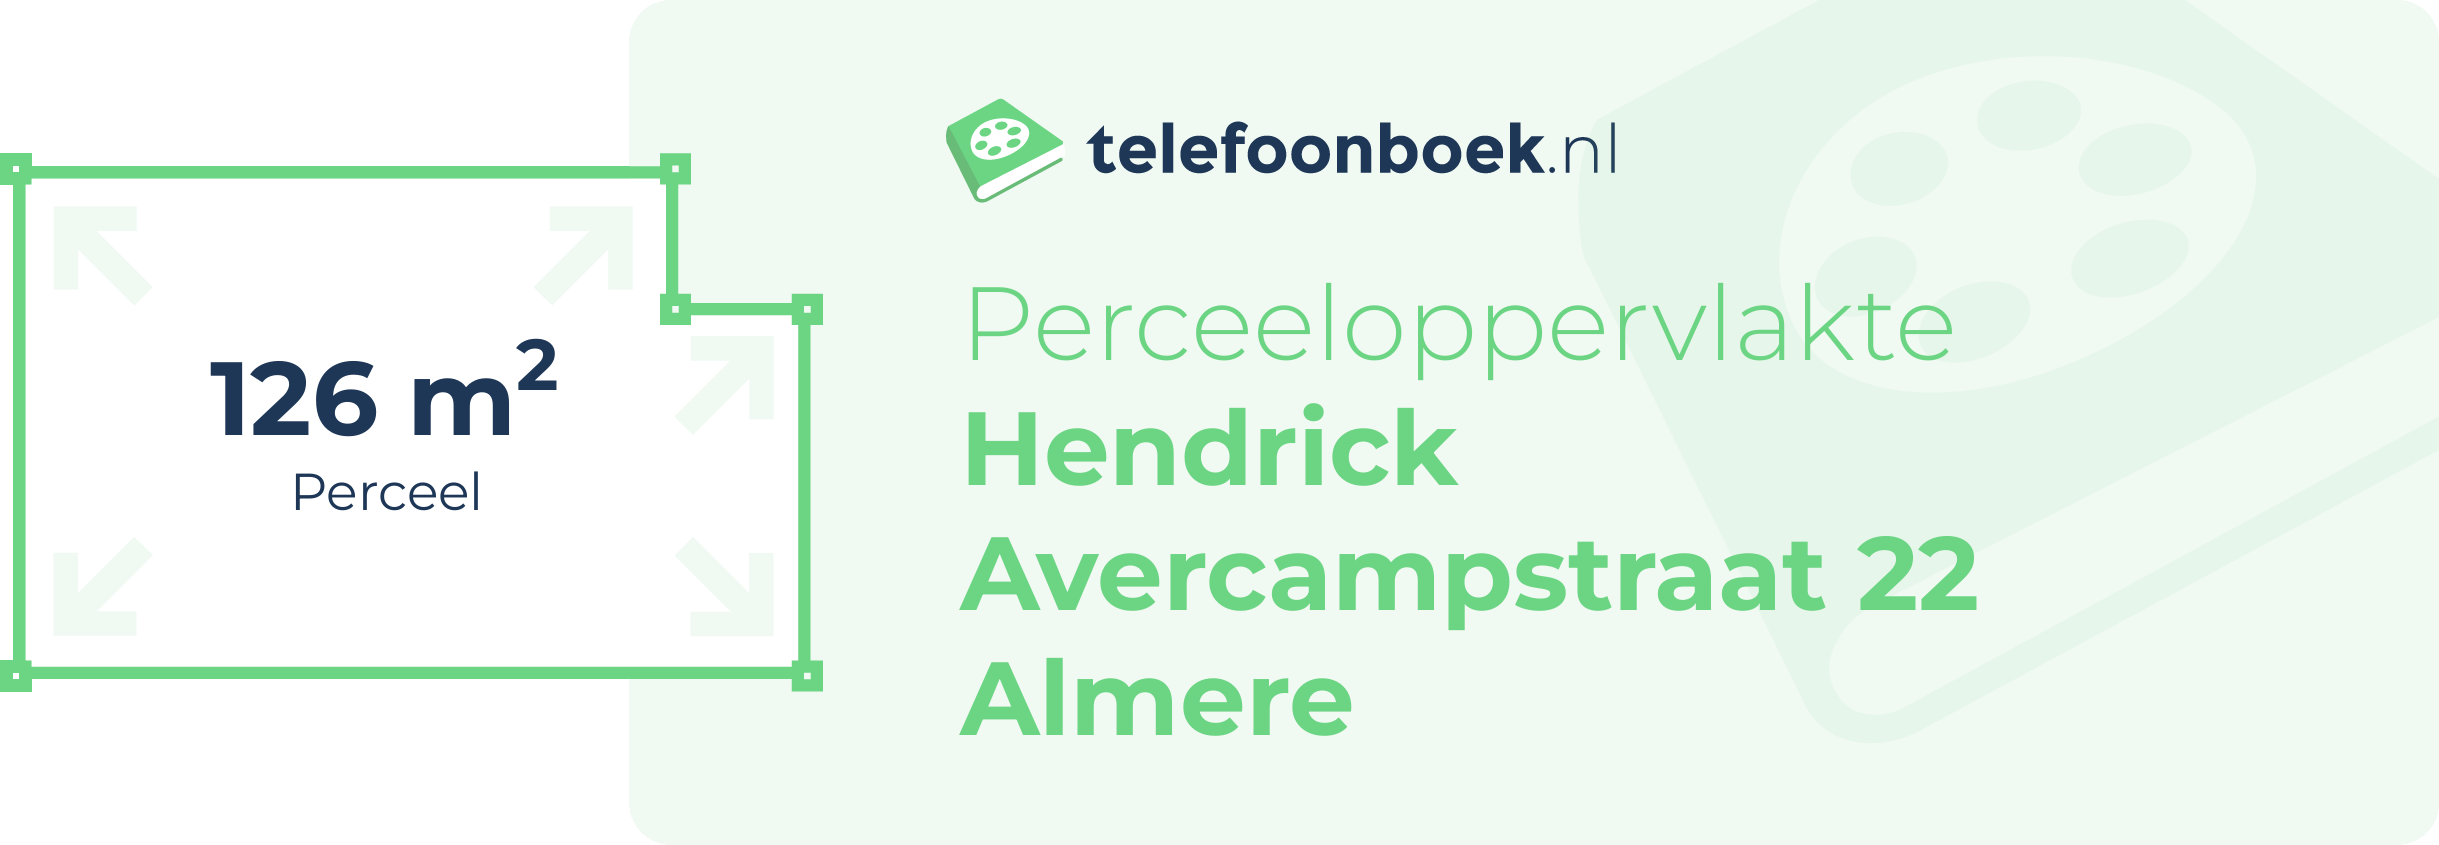 Perceeloppervlakte Hendrick Avercampstraat 22 Almere